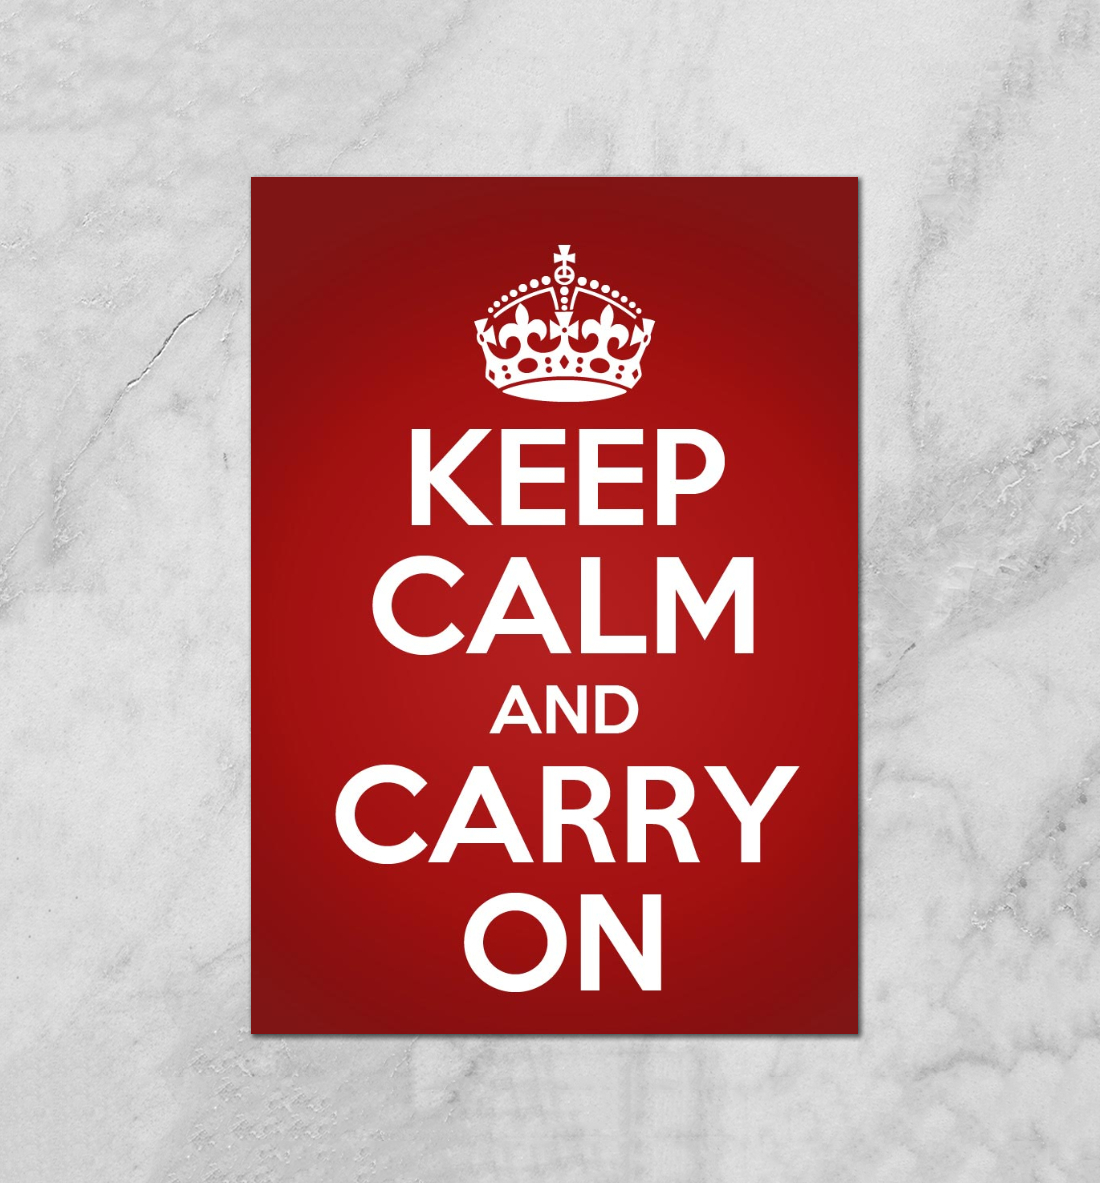 Keep calm на русский. КИП Калм энд Керри. Плакат keep Calm and carry. Keep Calm and carry on. Постер keep Calm.